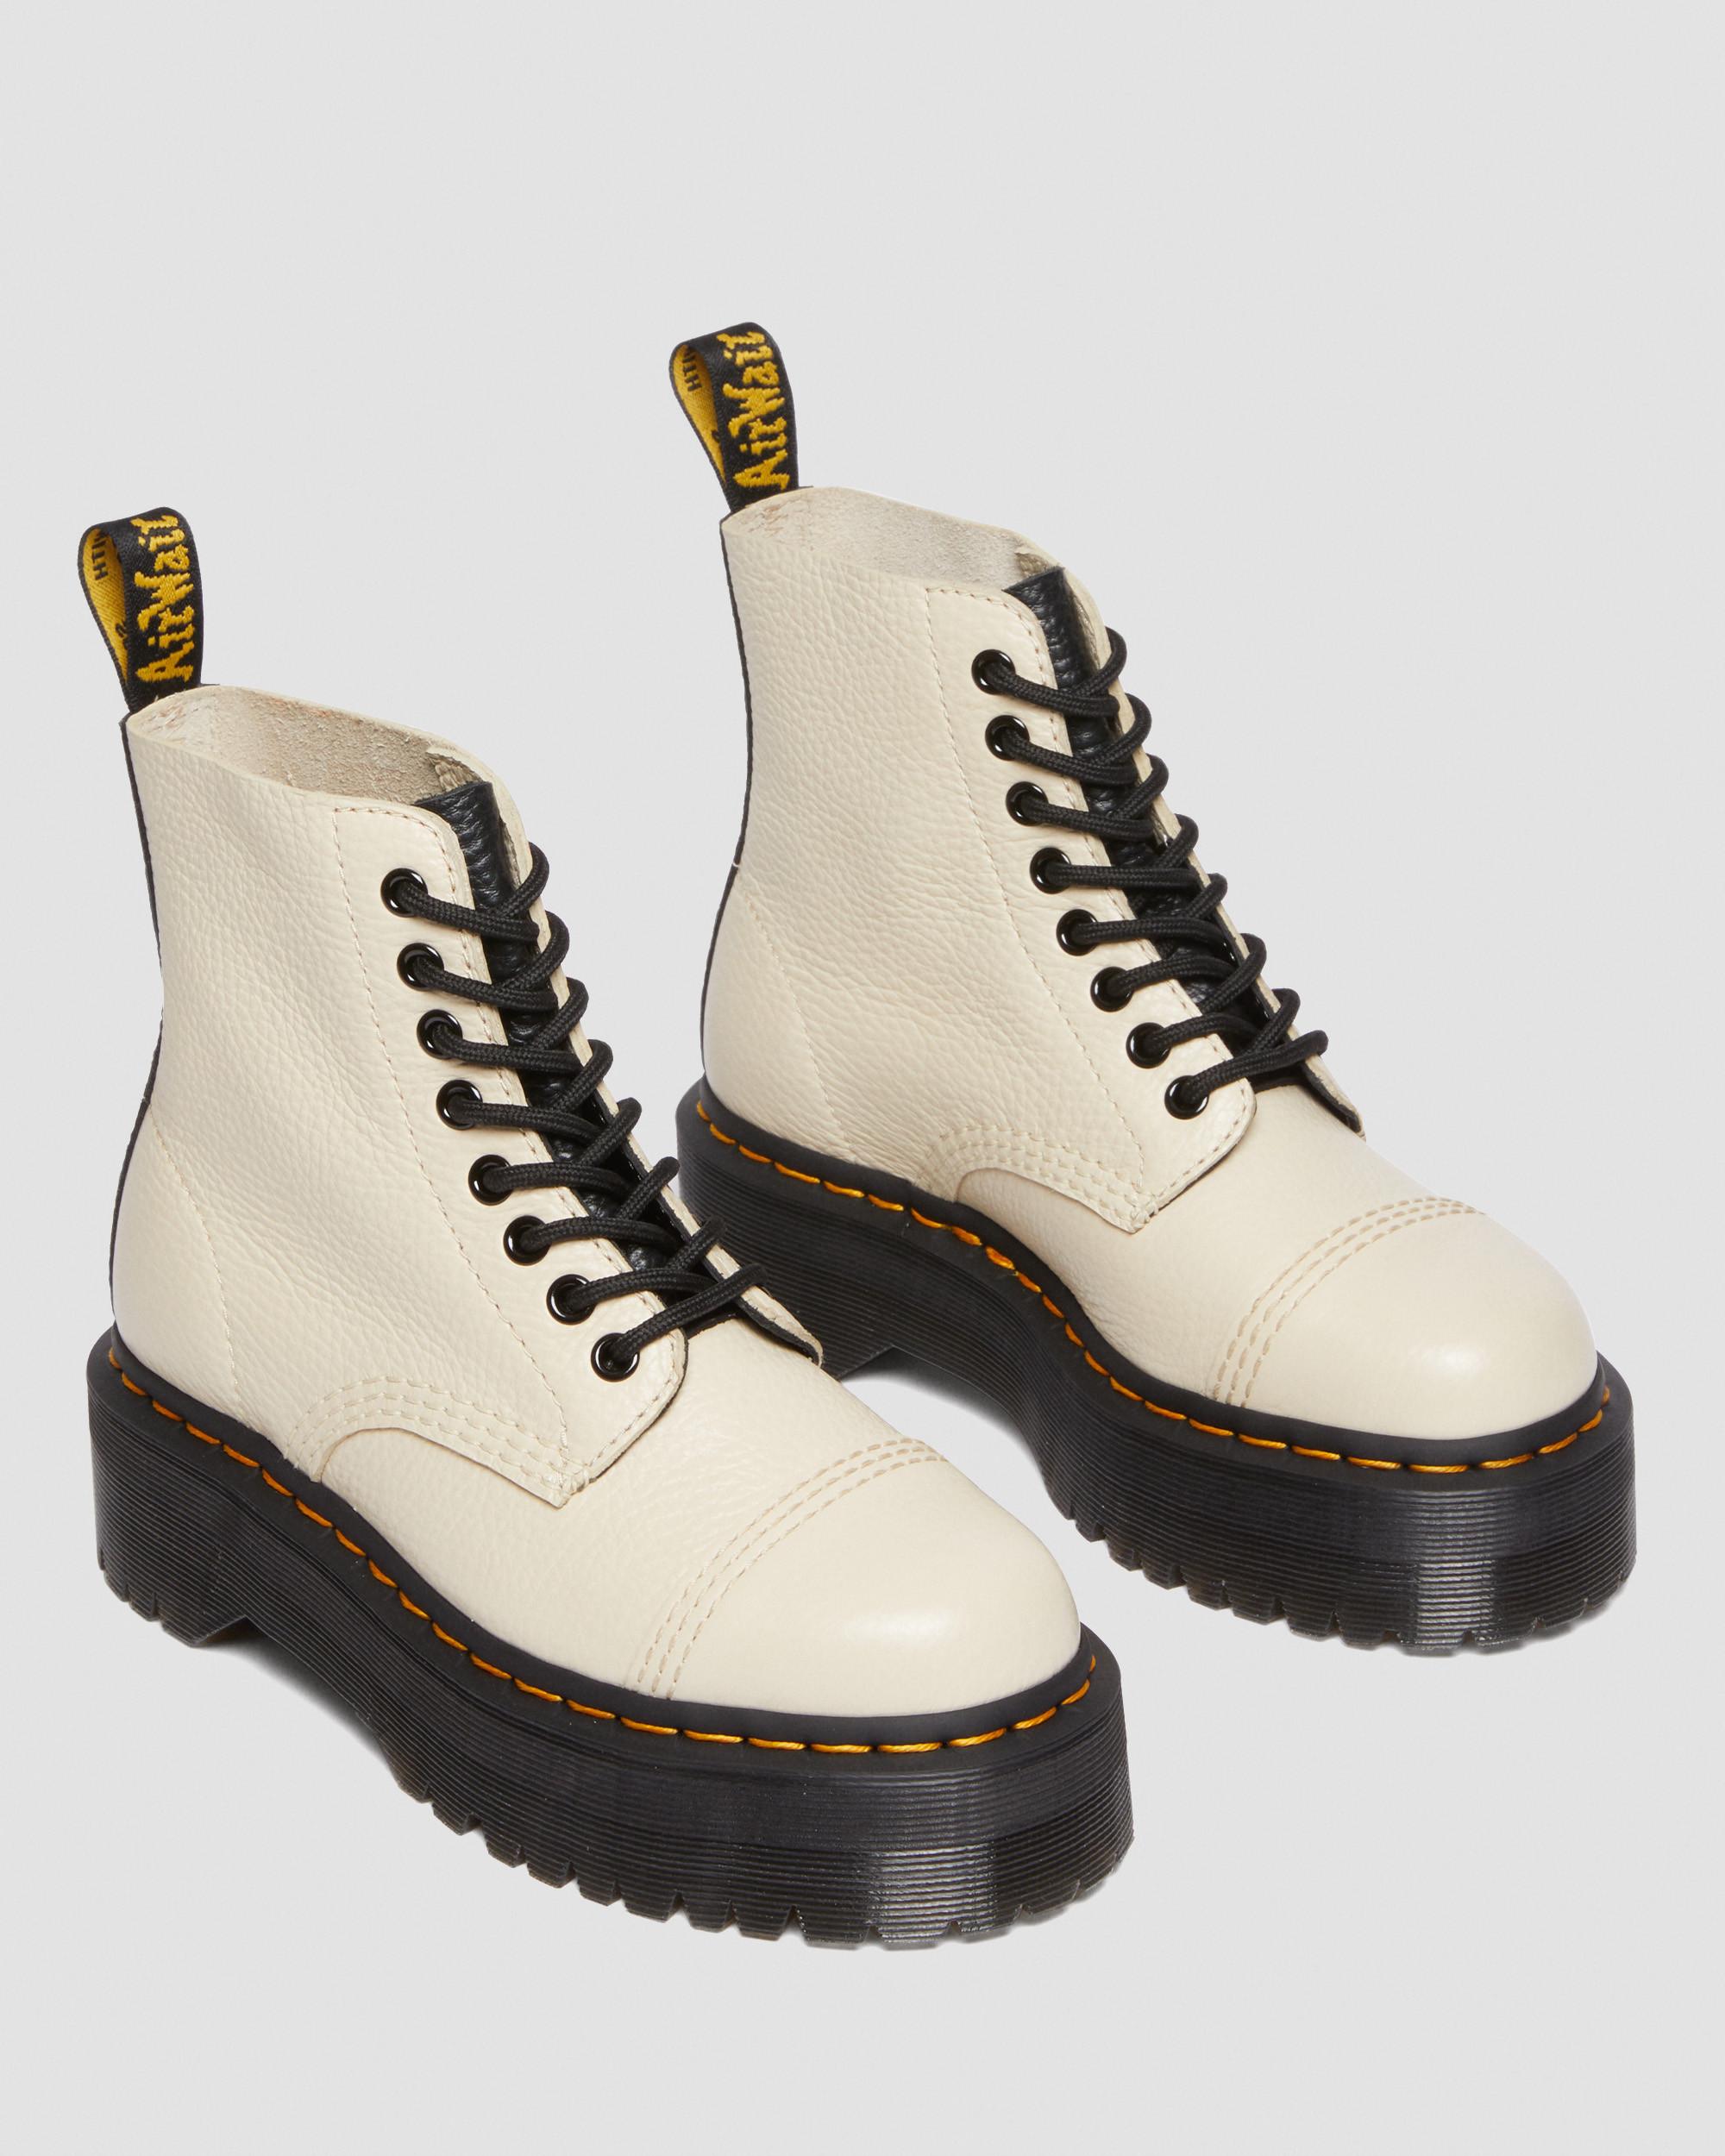 Sinclair-platformstøvler i Milled Nappa-læder i neutralSinclair-platformstøvler i Milled Nappa-læder Dr. Martens